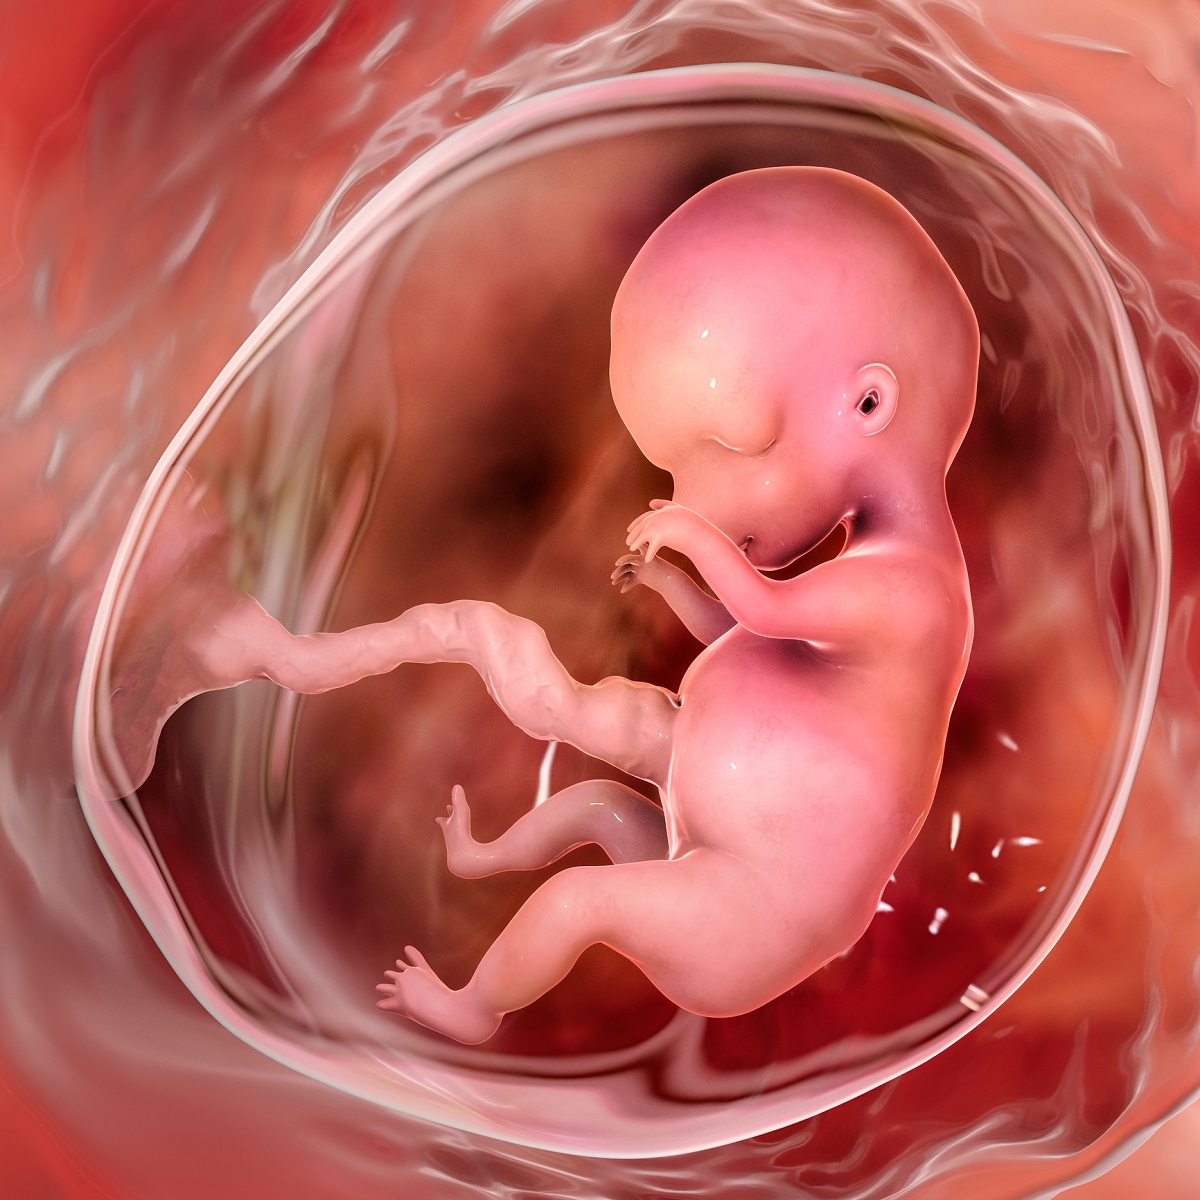 Embryo v 9. týdnu těhotenství. Zdroj: Getty Images